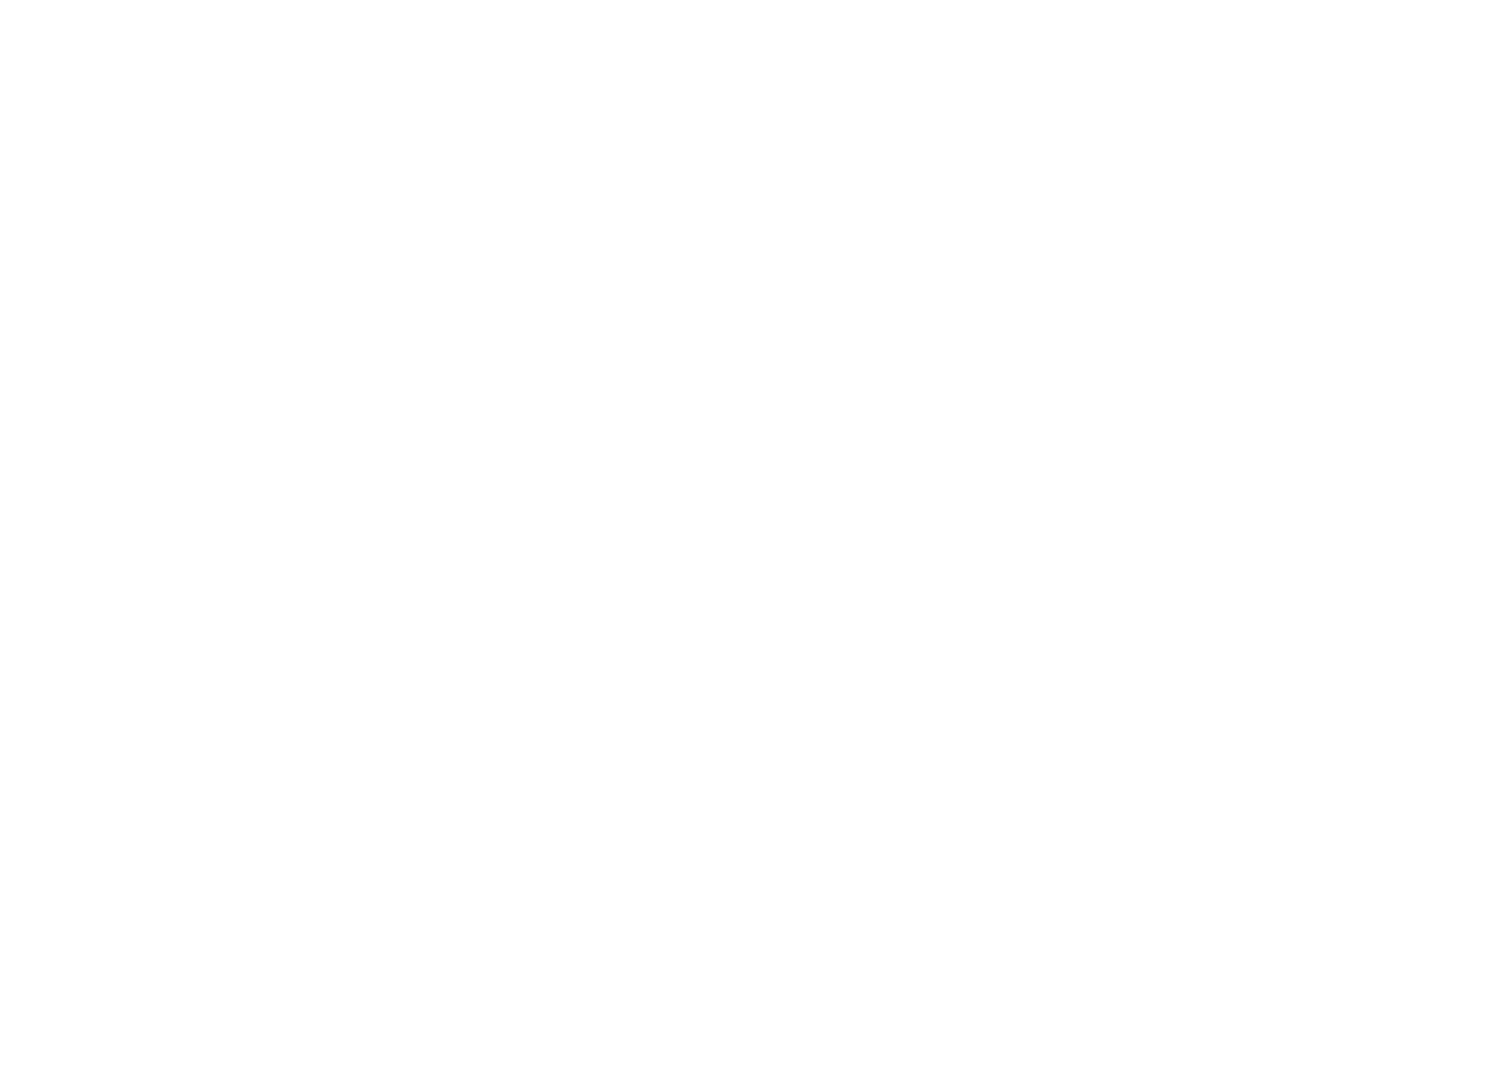 Salt &amp; Paper Press